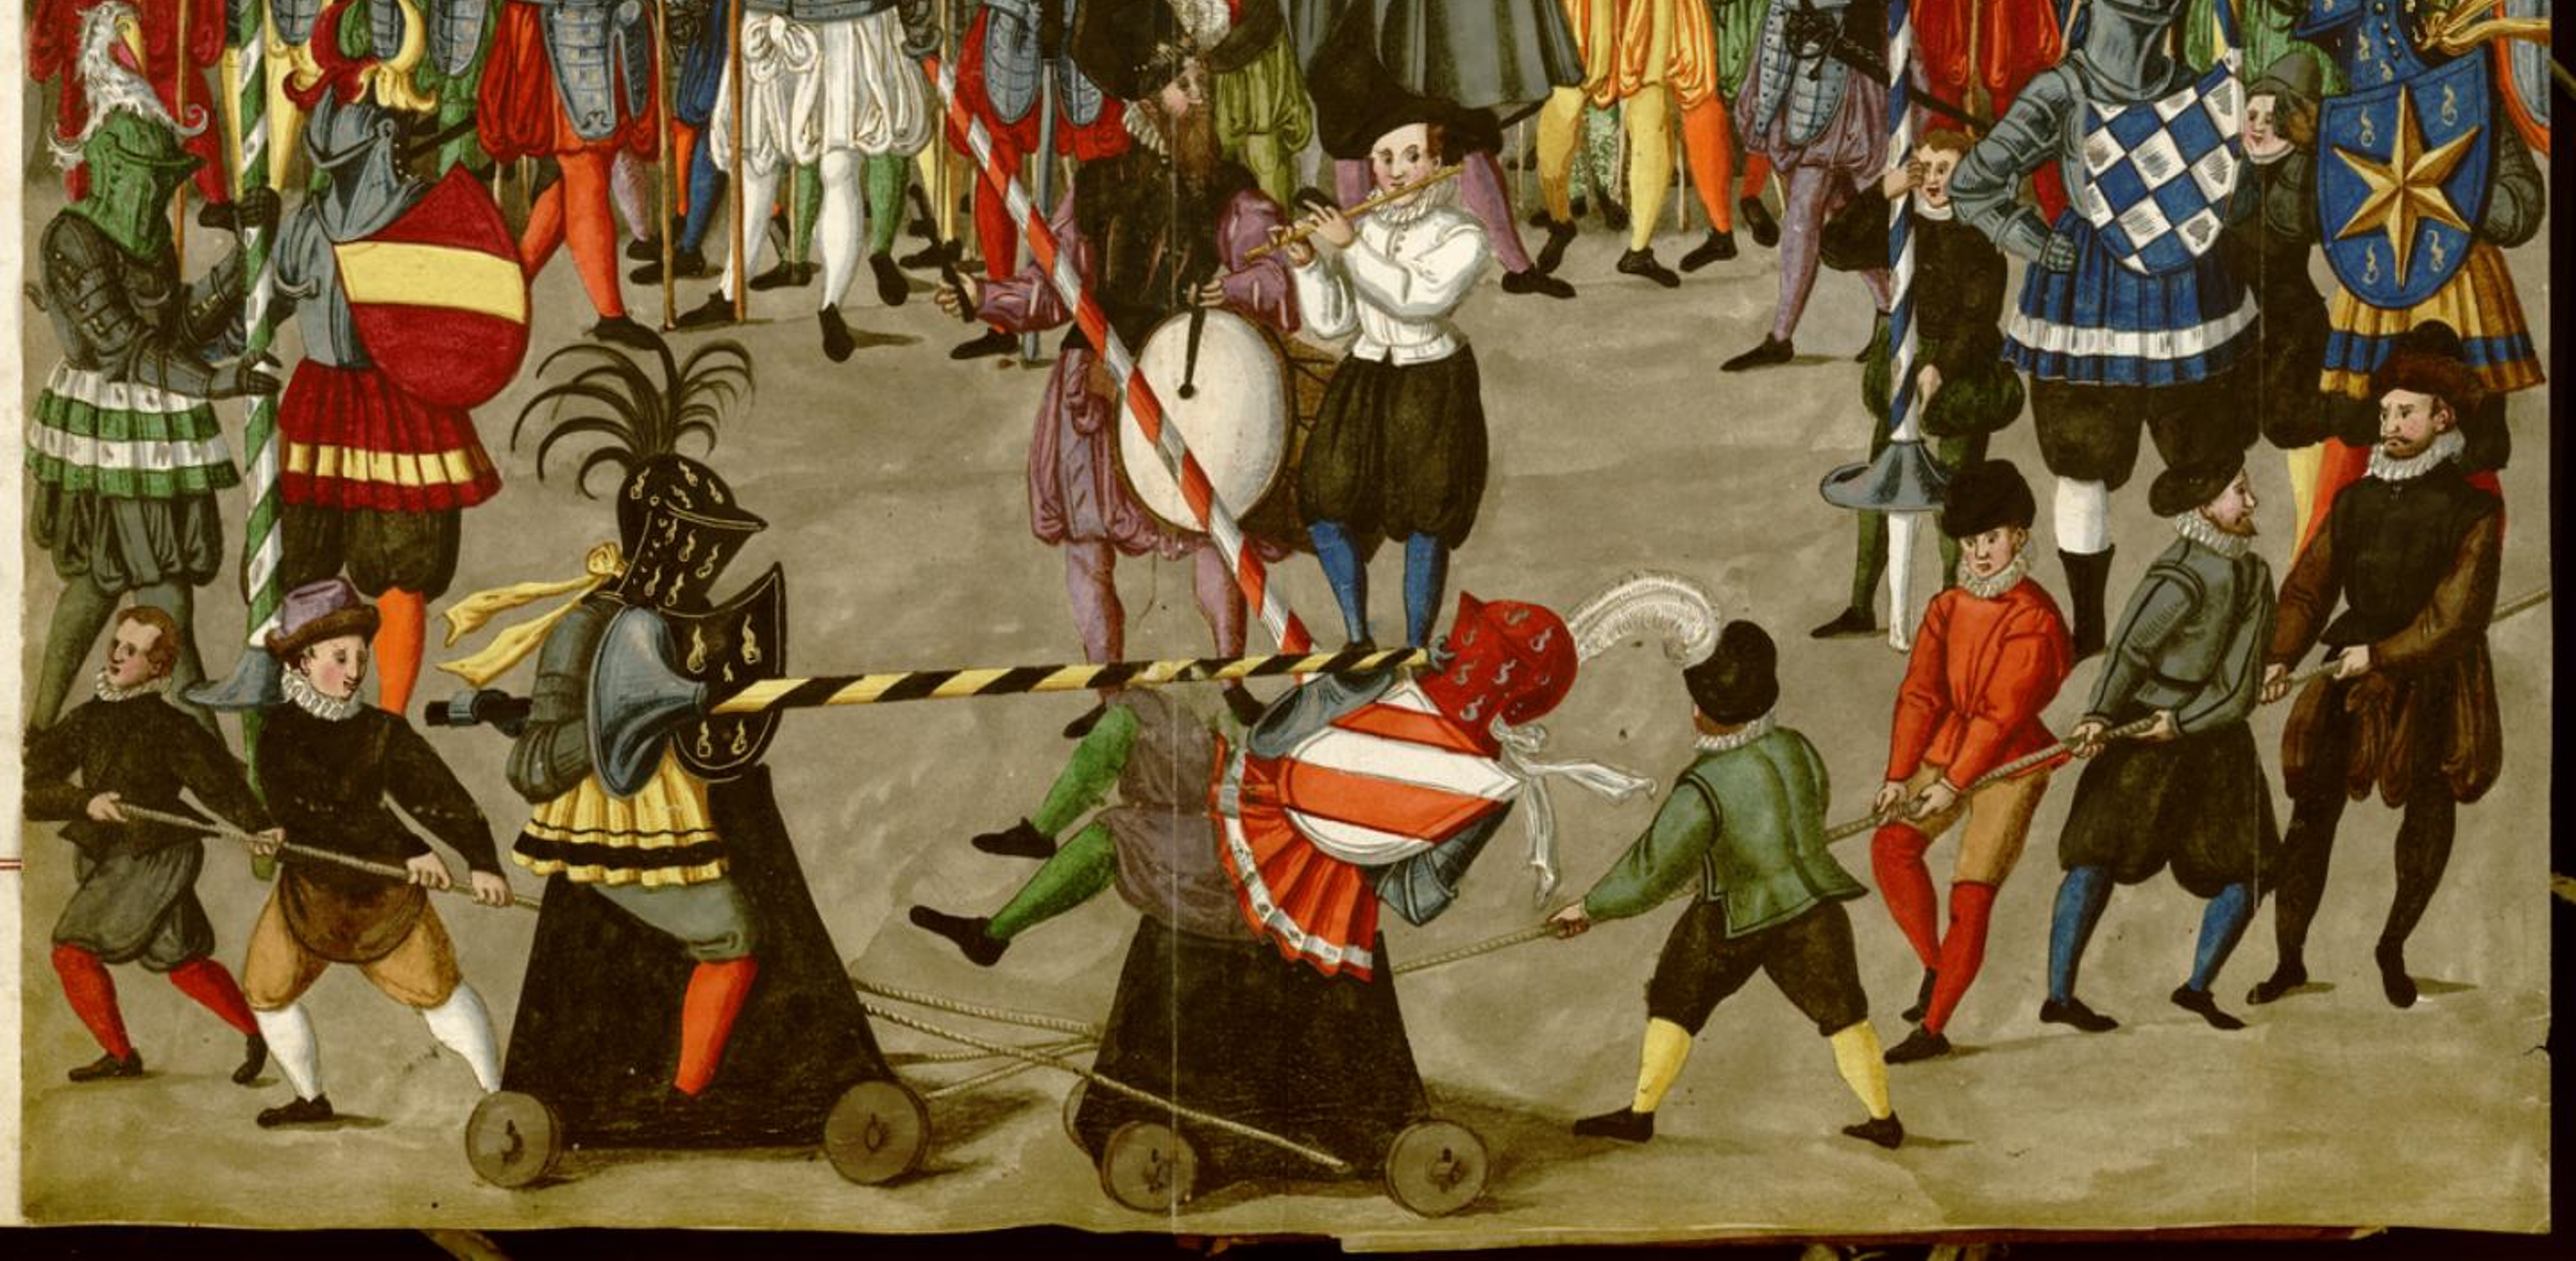 Torneo Carnaval de Nuremberg. 1600. Detalle.